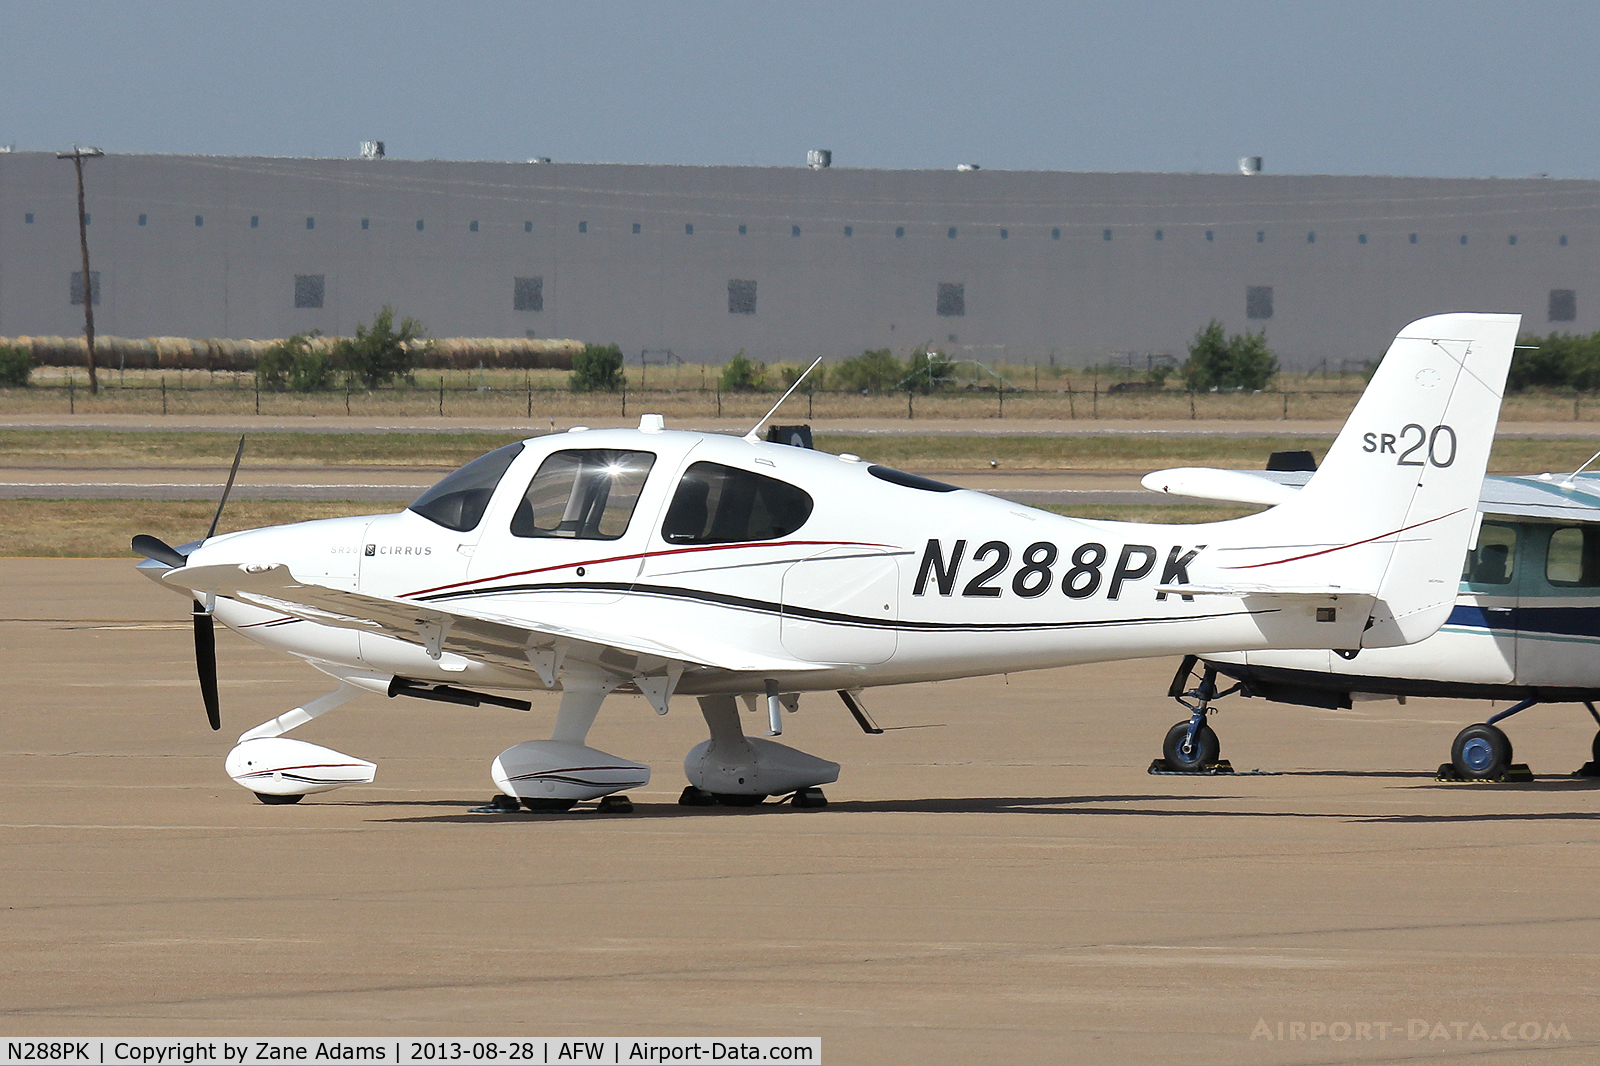 N288PK, Cirrus SR20 C/N 2089, At Alliance Airport - Ft. Worth, TX